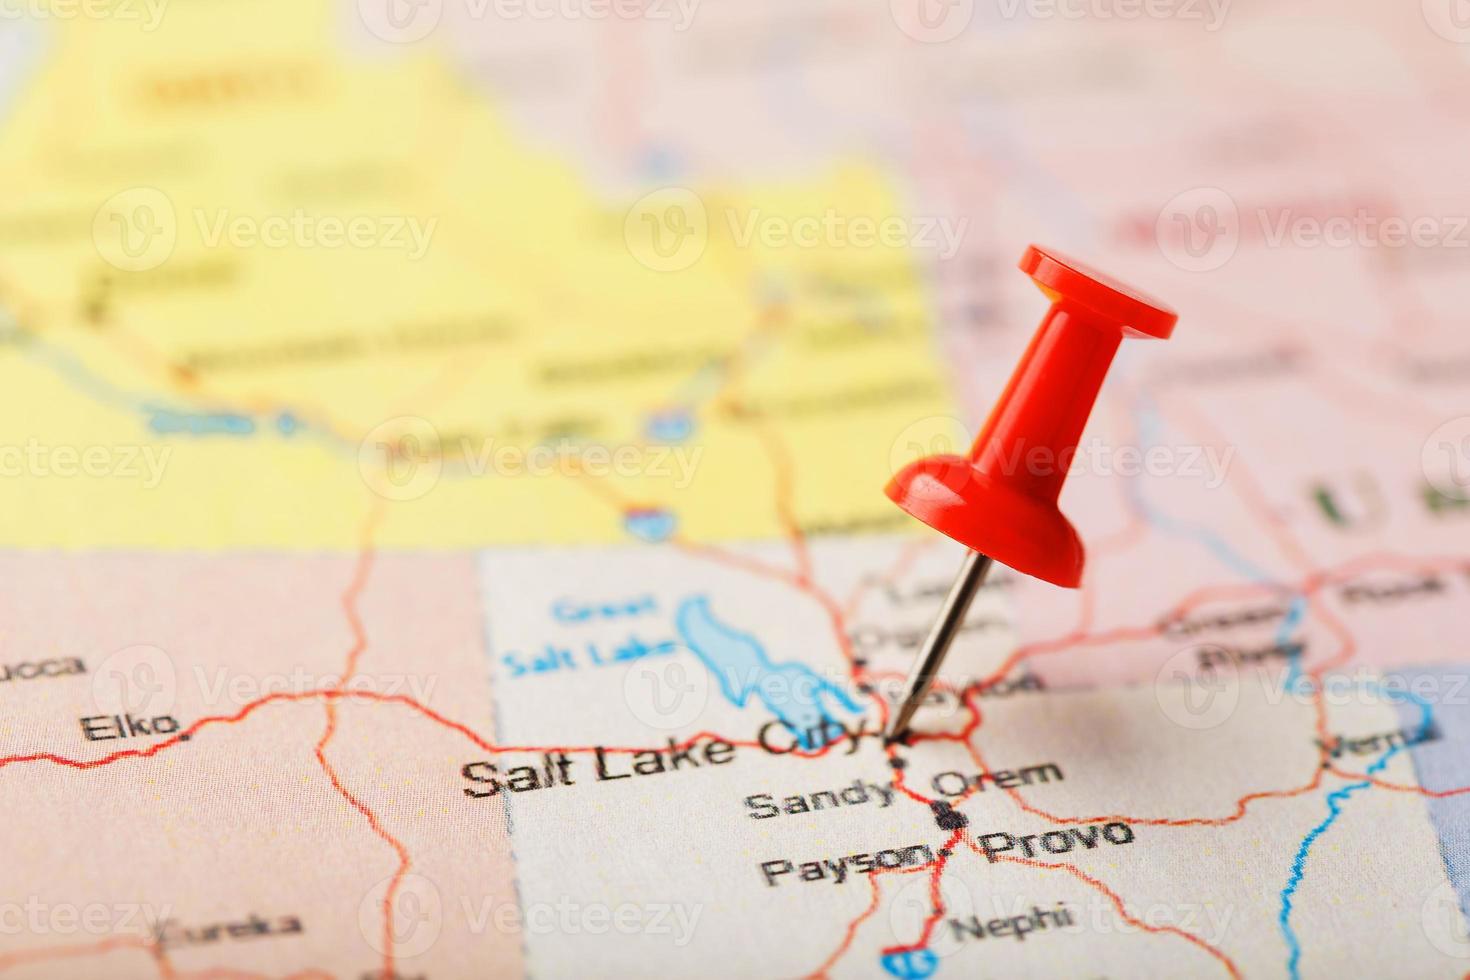 agulha clerical vermelha em um mapa dos eua, utah e a capital salt lake city. closeup mapa utah com tachinha vermelha foto